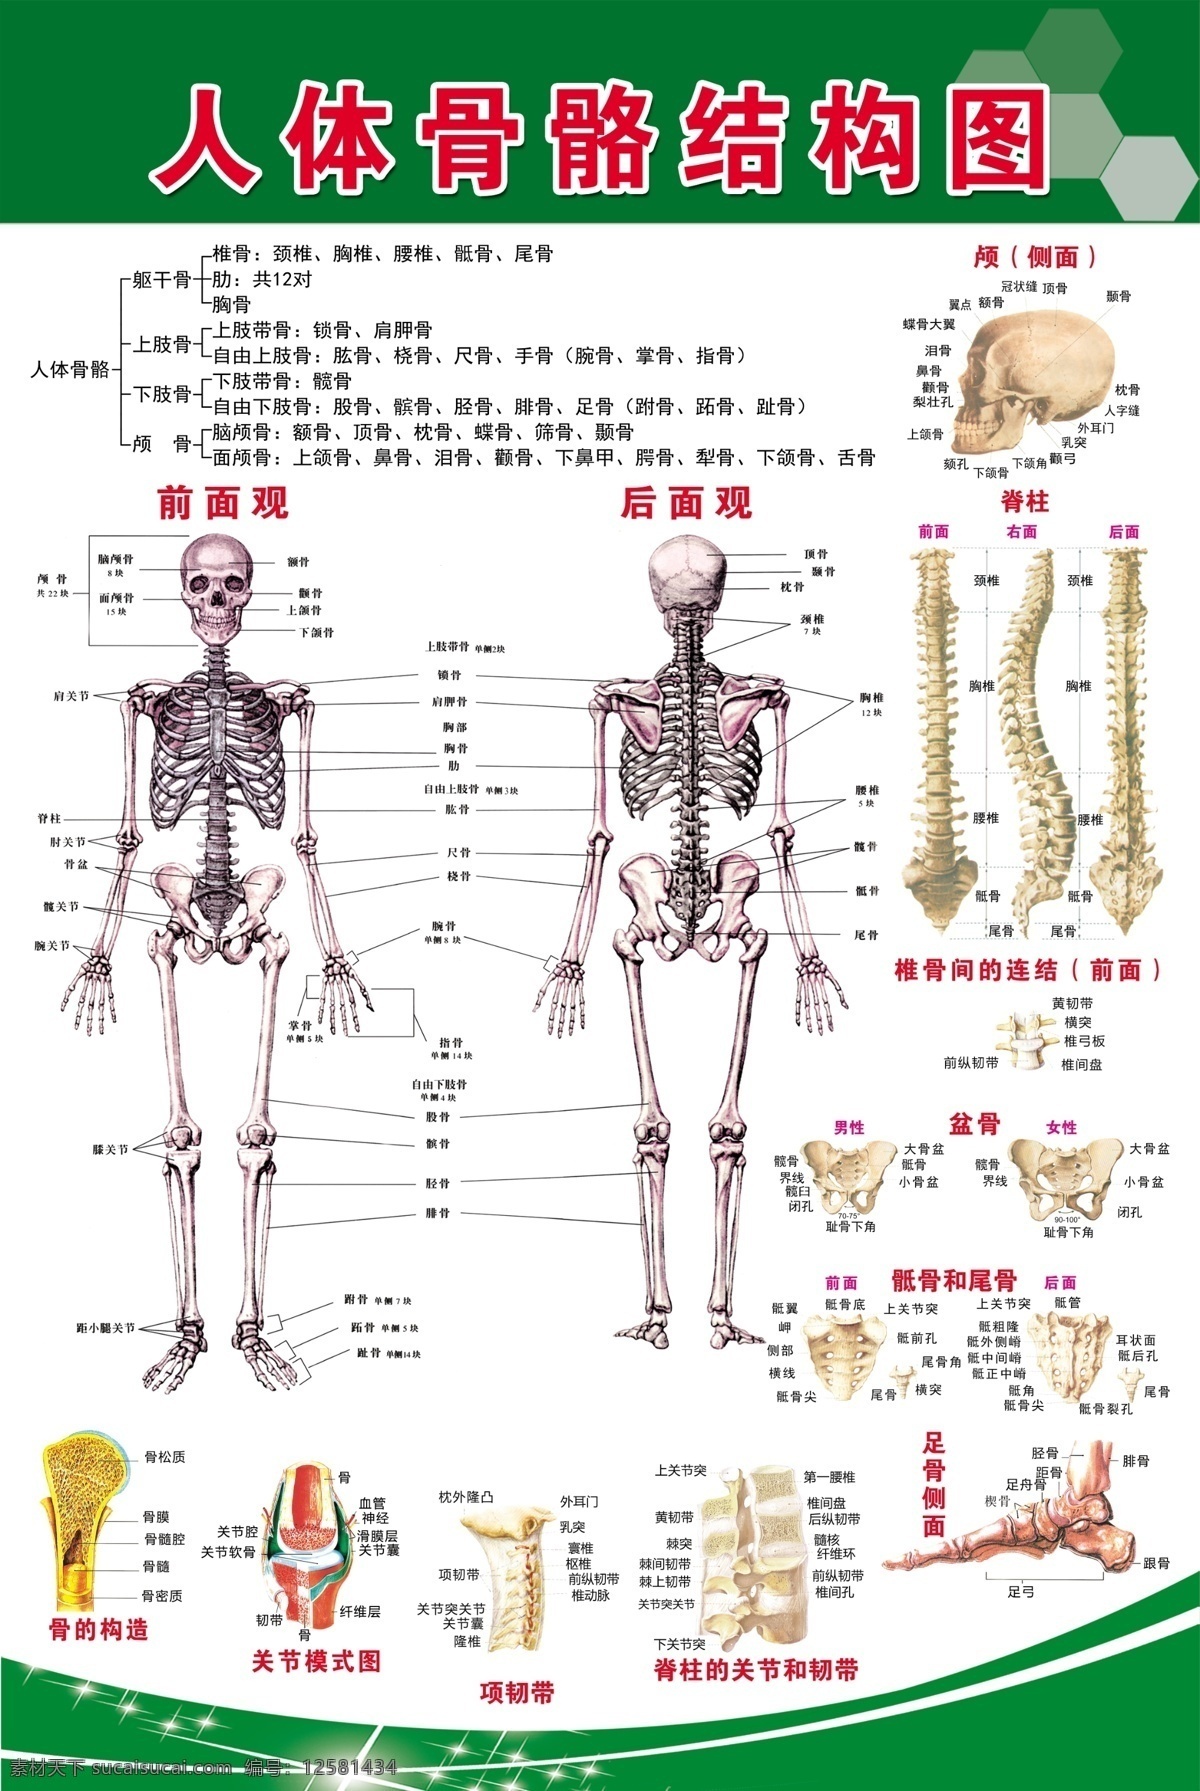 人体 骨骼 结构图 骨骼结构 头骨 脊椎 工作资源 展板模板